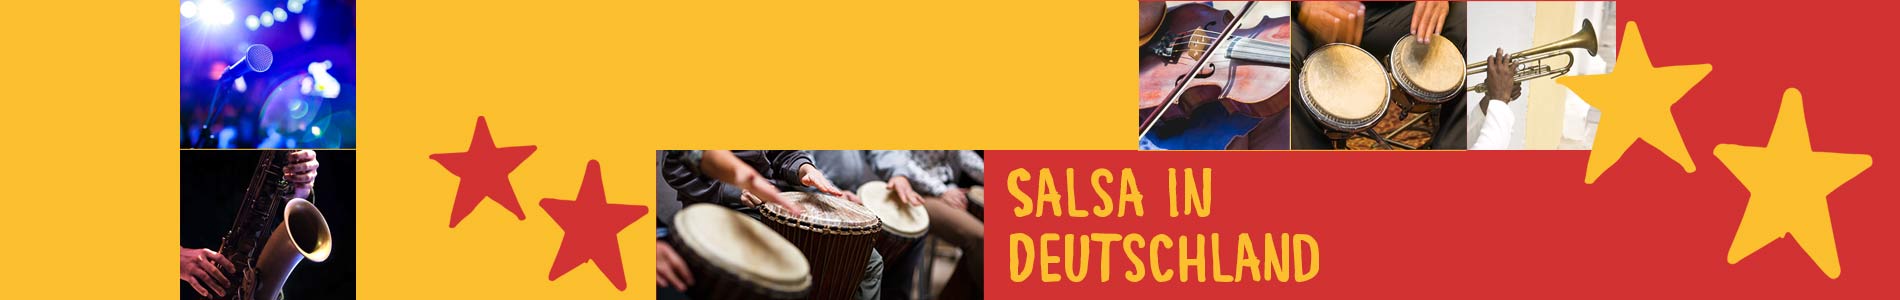 Salsa in Danndorf – Salsa lernen und tanzen, Tanzkurse, Partys, Veranstaltungen